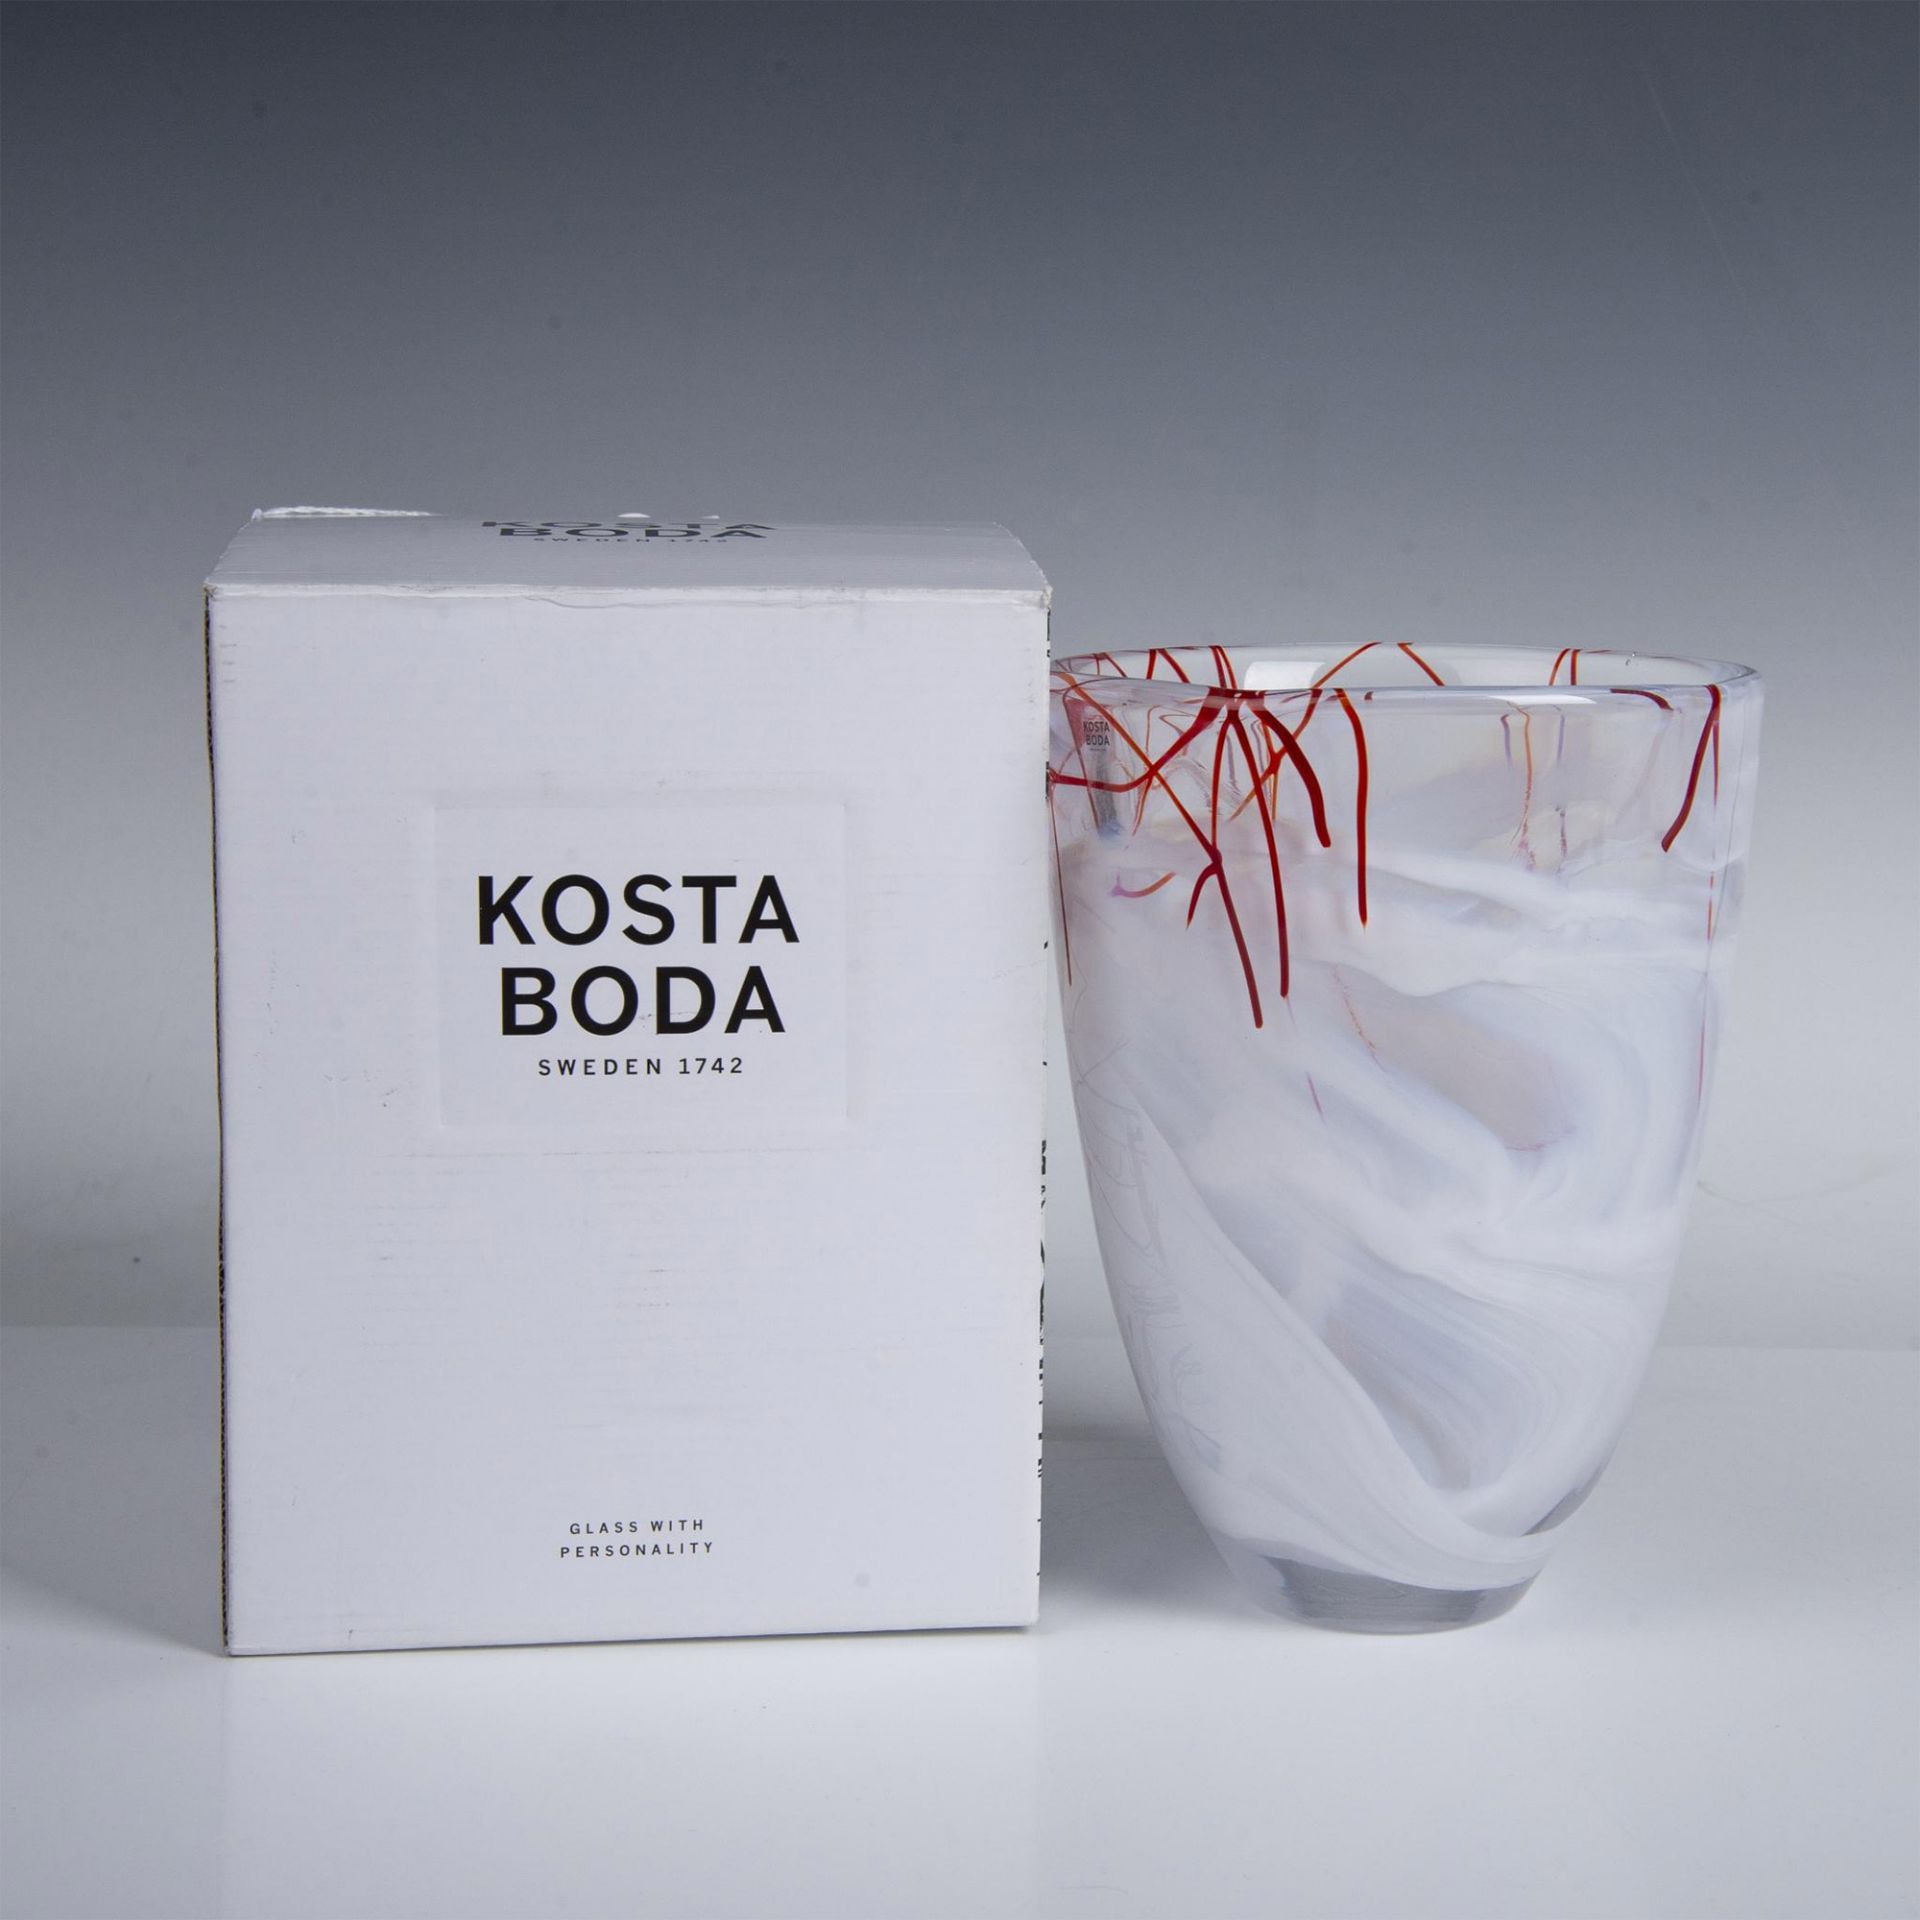 Kosta Boda by Anna Ehrner Art Glass Vase, Contrast - Image 2 of 5